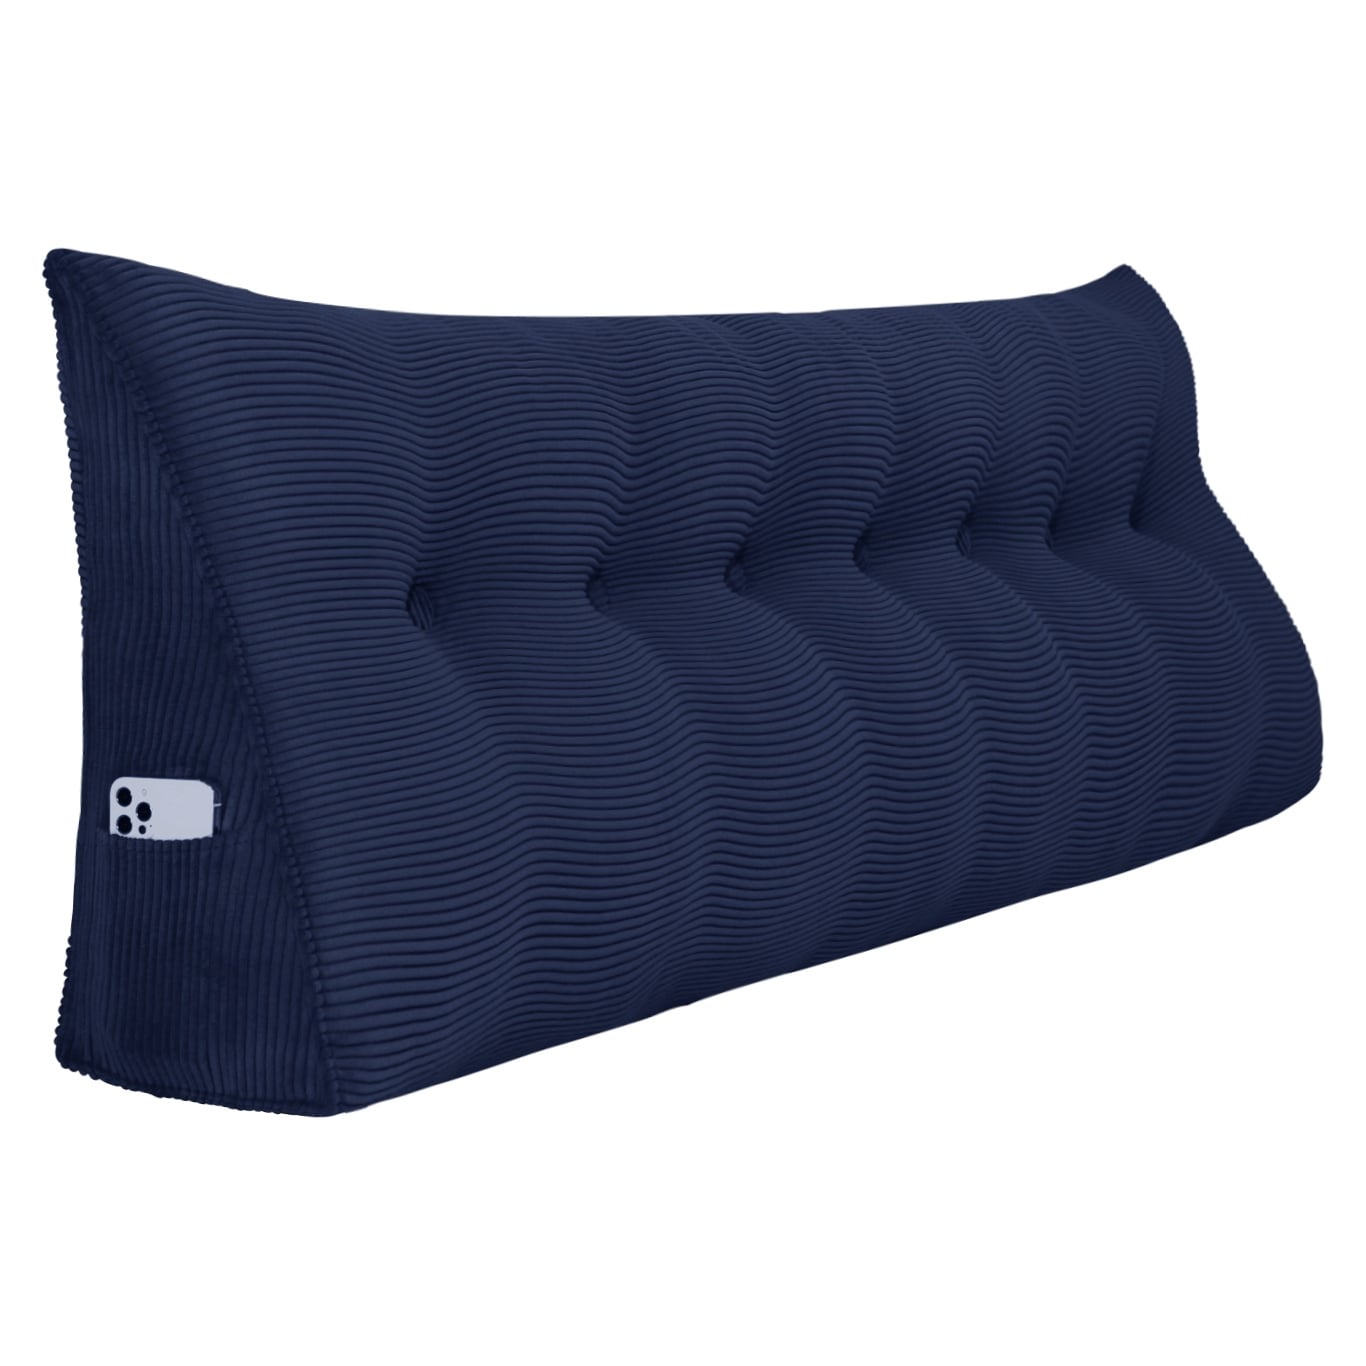 Wedge Lumbar Pillow, Triangular Reading Pillow Cushion with